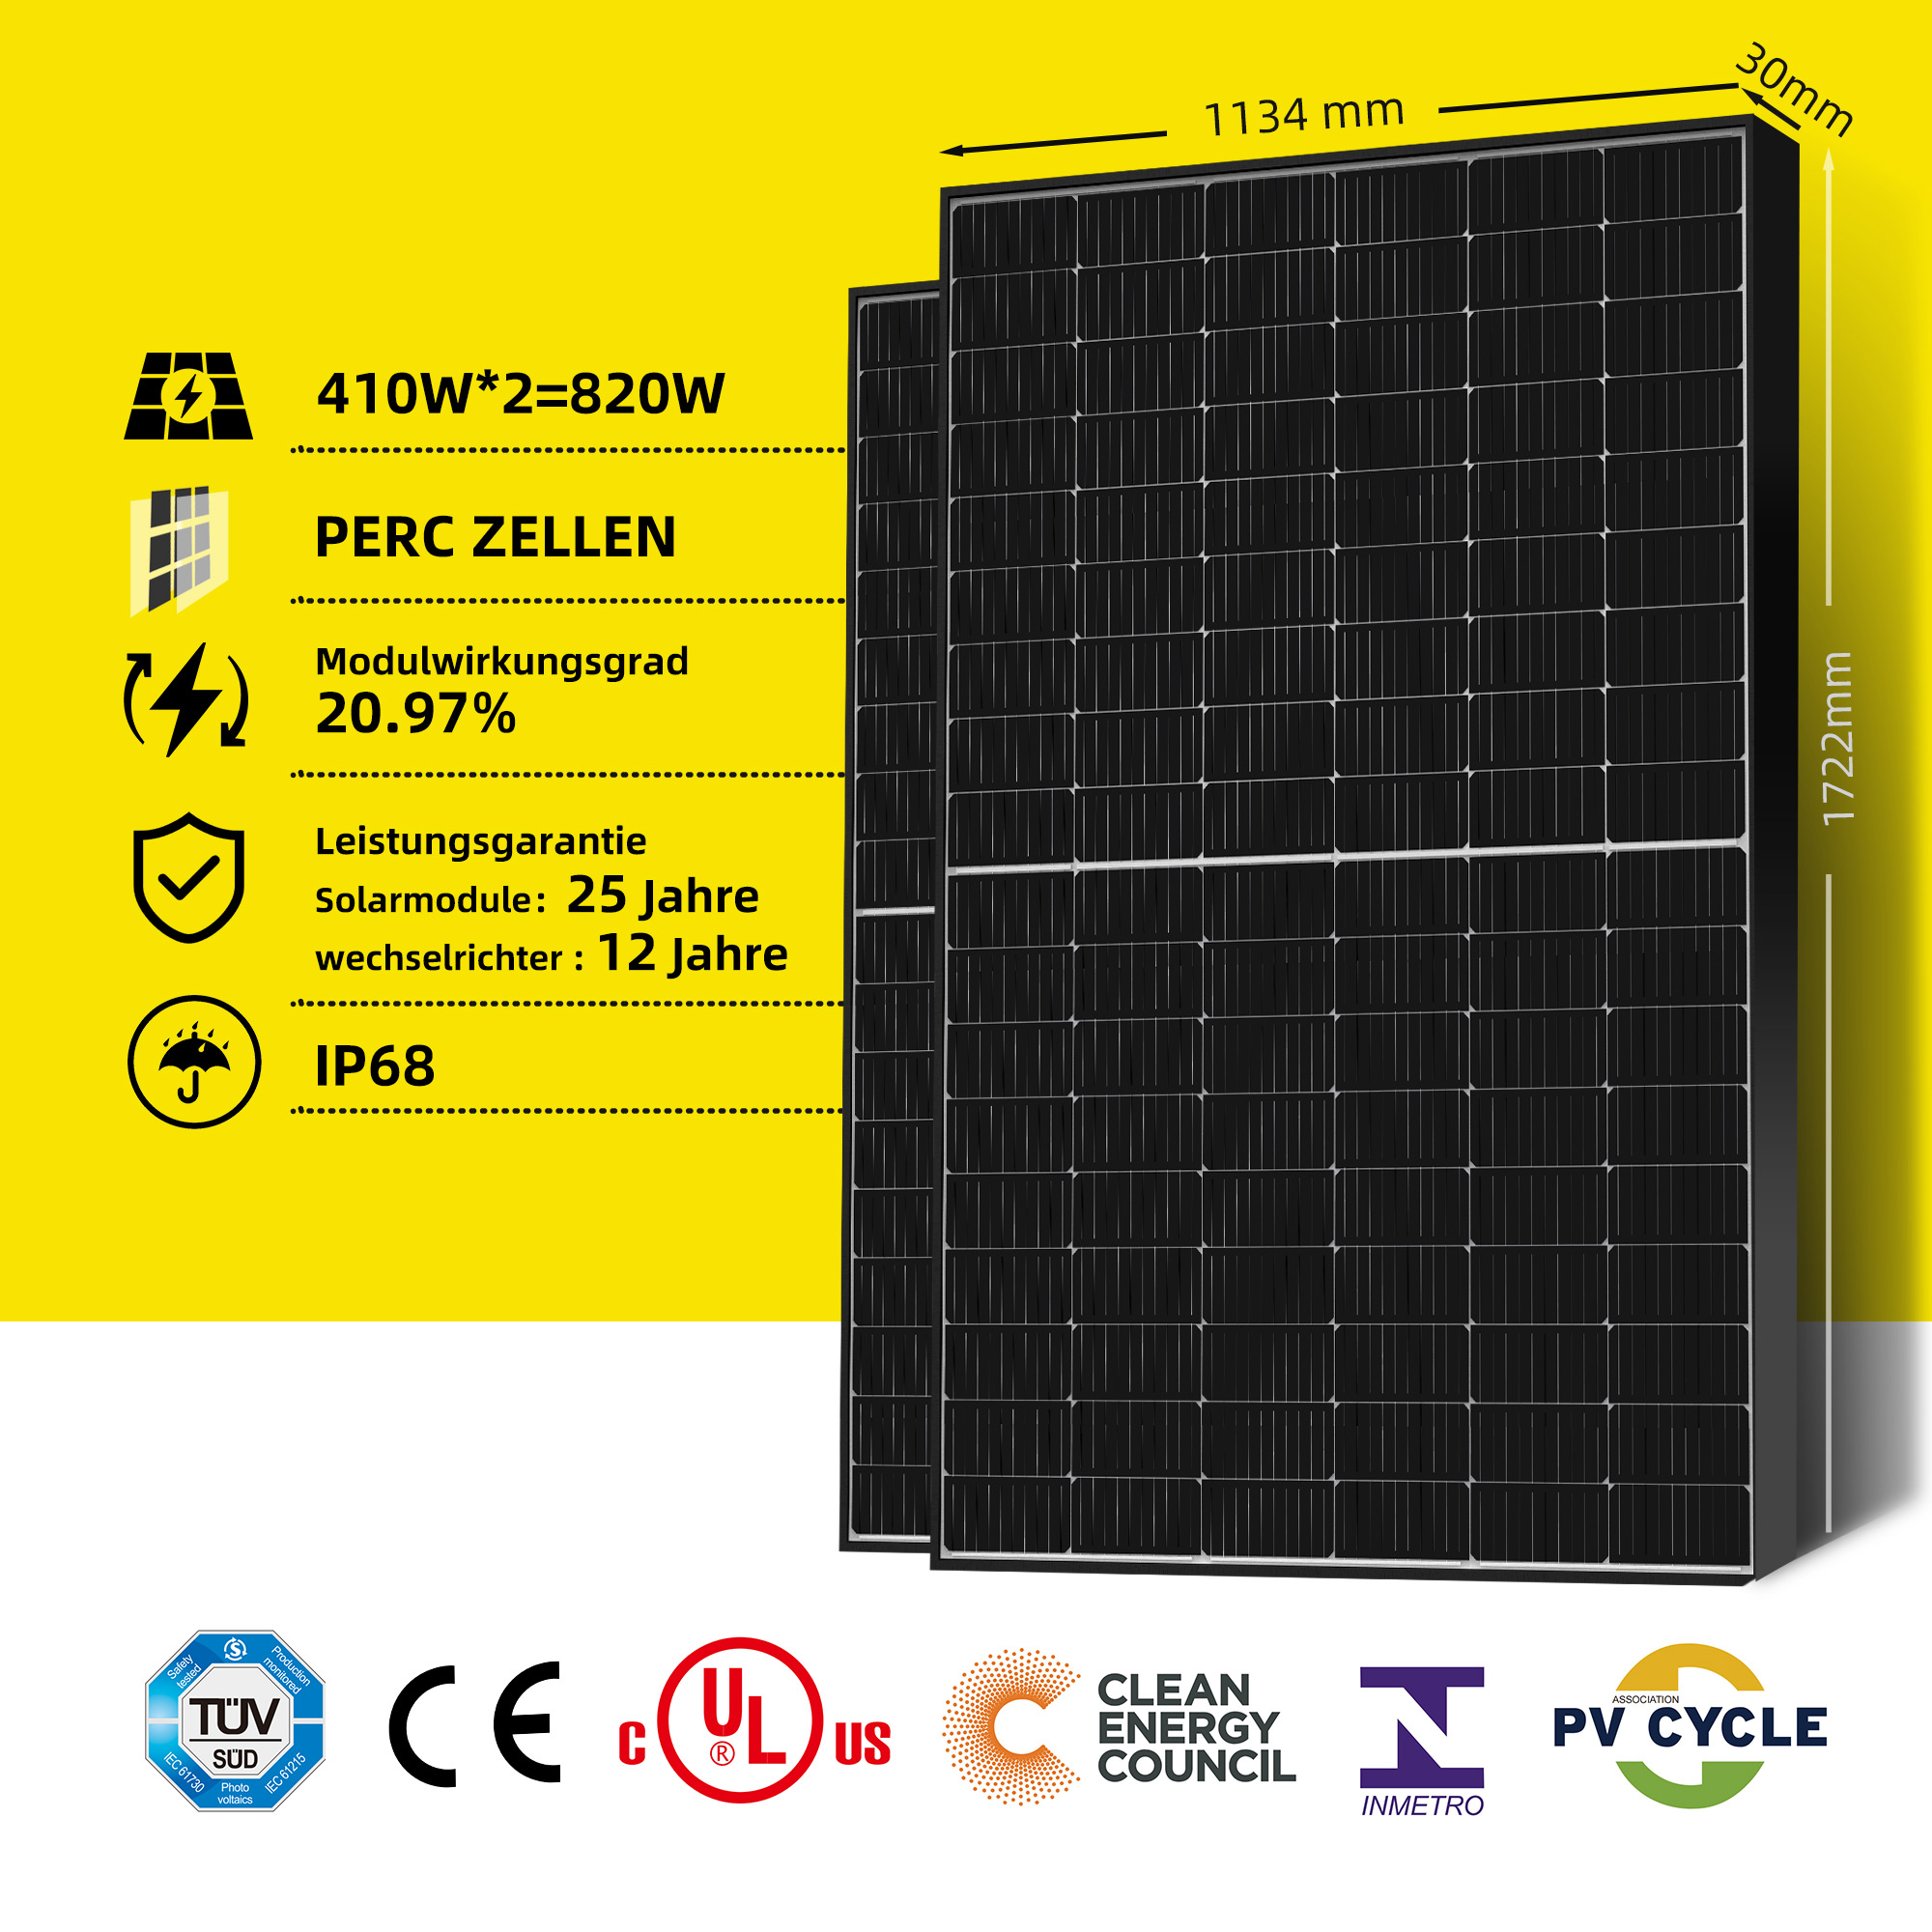 EFORU Balkonkraftwerk 820W | Solarmodule Balkon-Solaranlagen 2x 800W Komplett Steckdose mit 410W